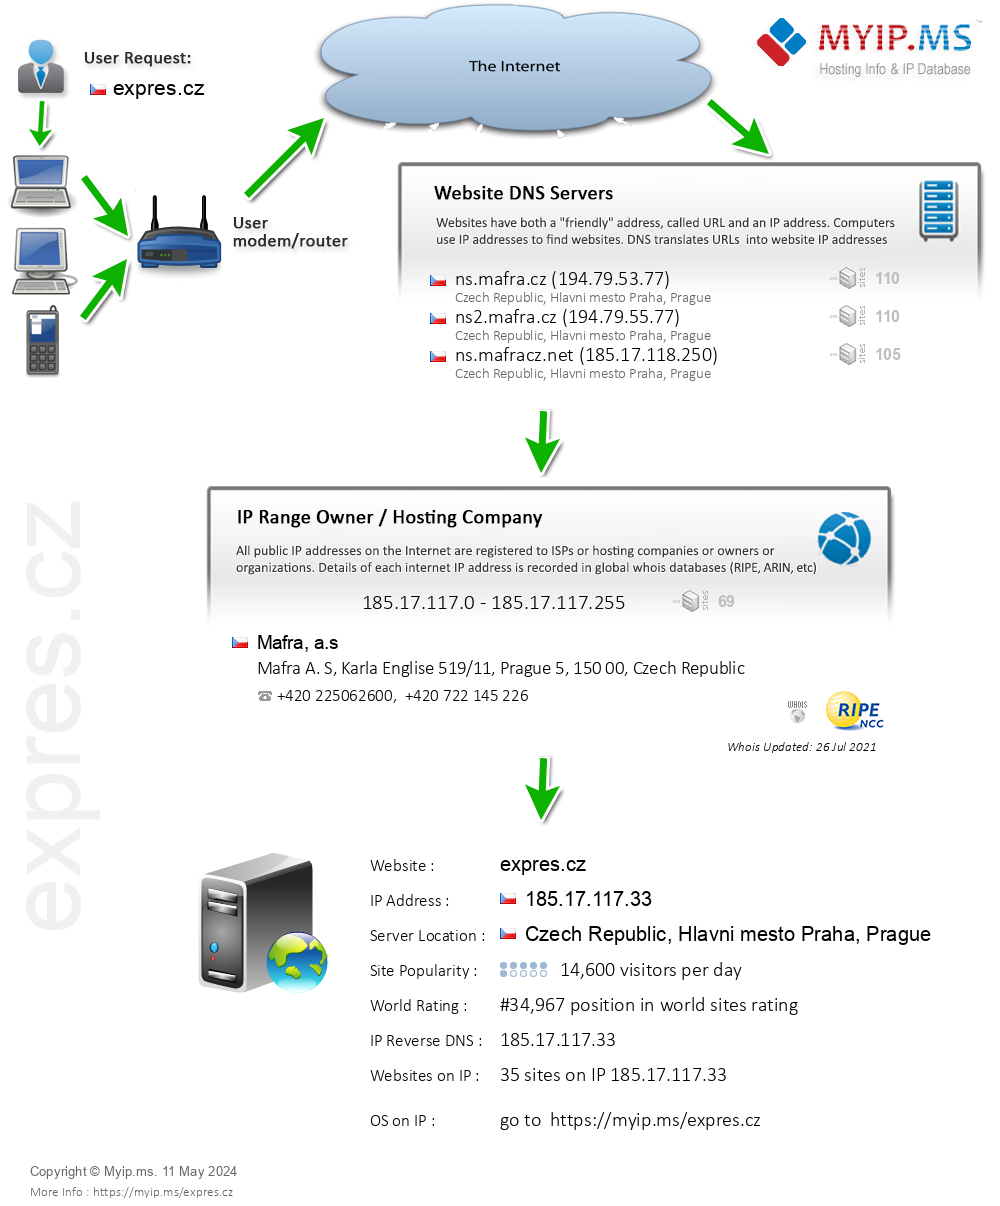 Expres.cz - Website Hosting Visual IP Diagram